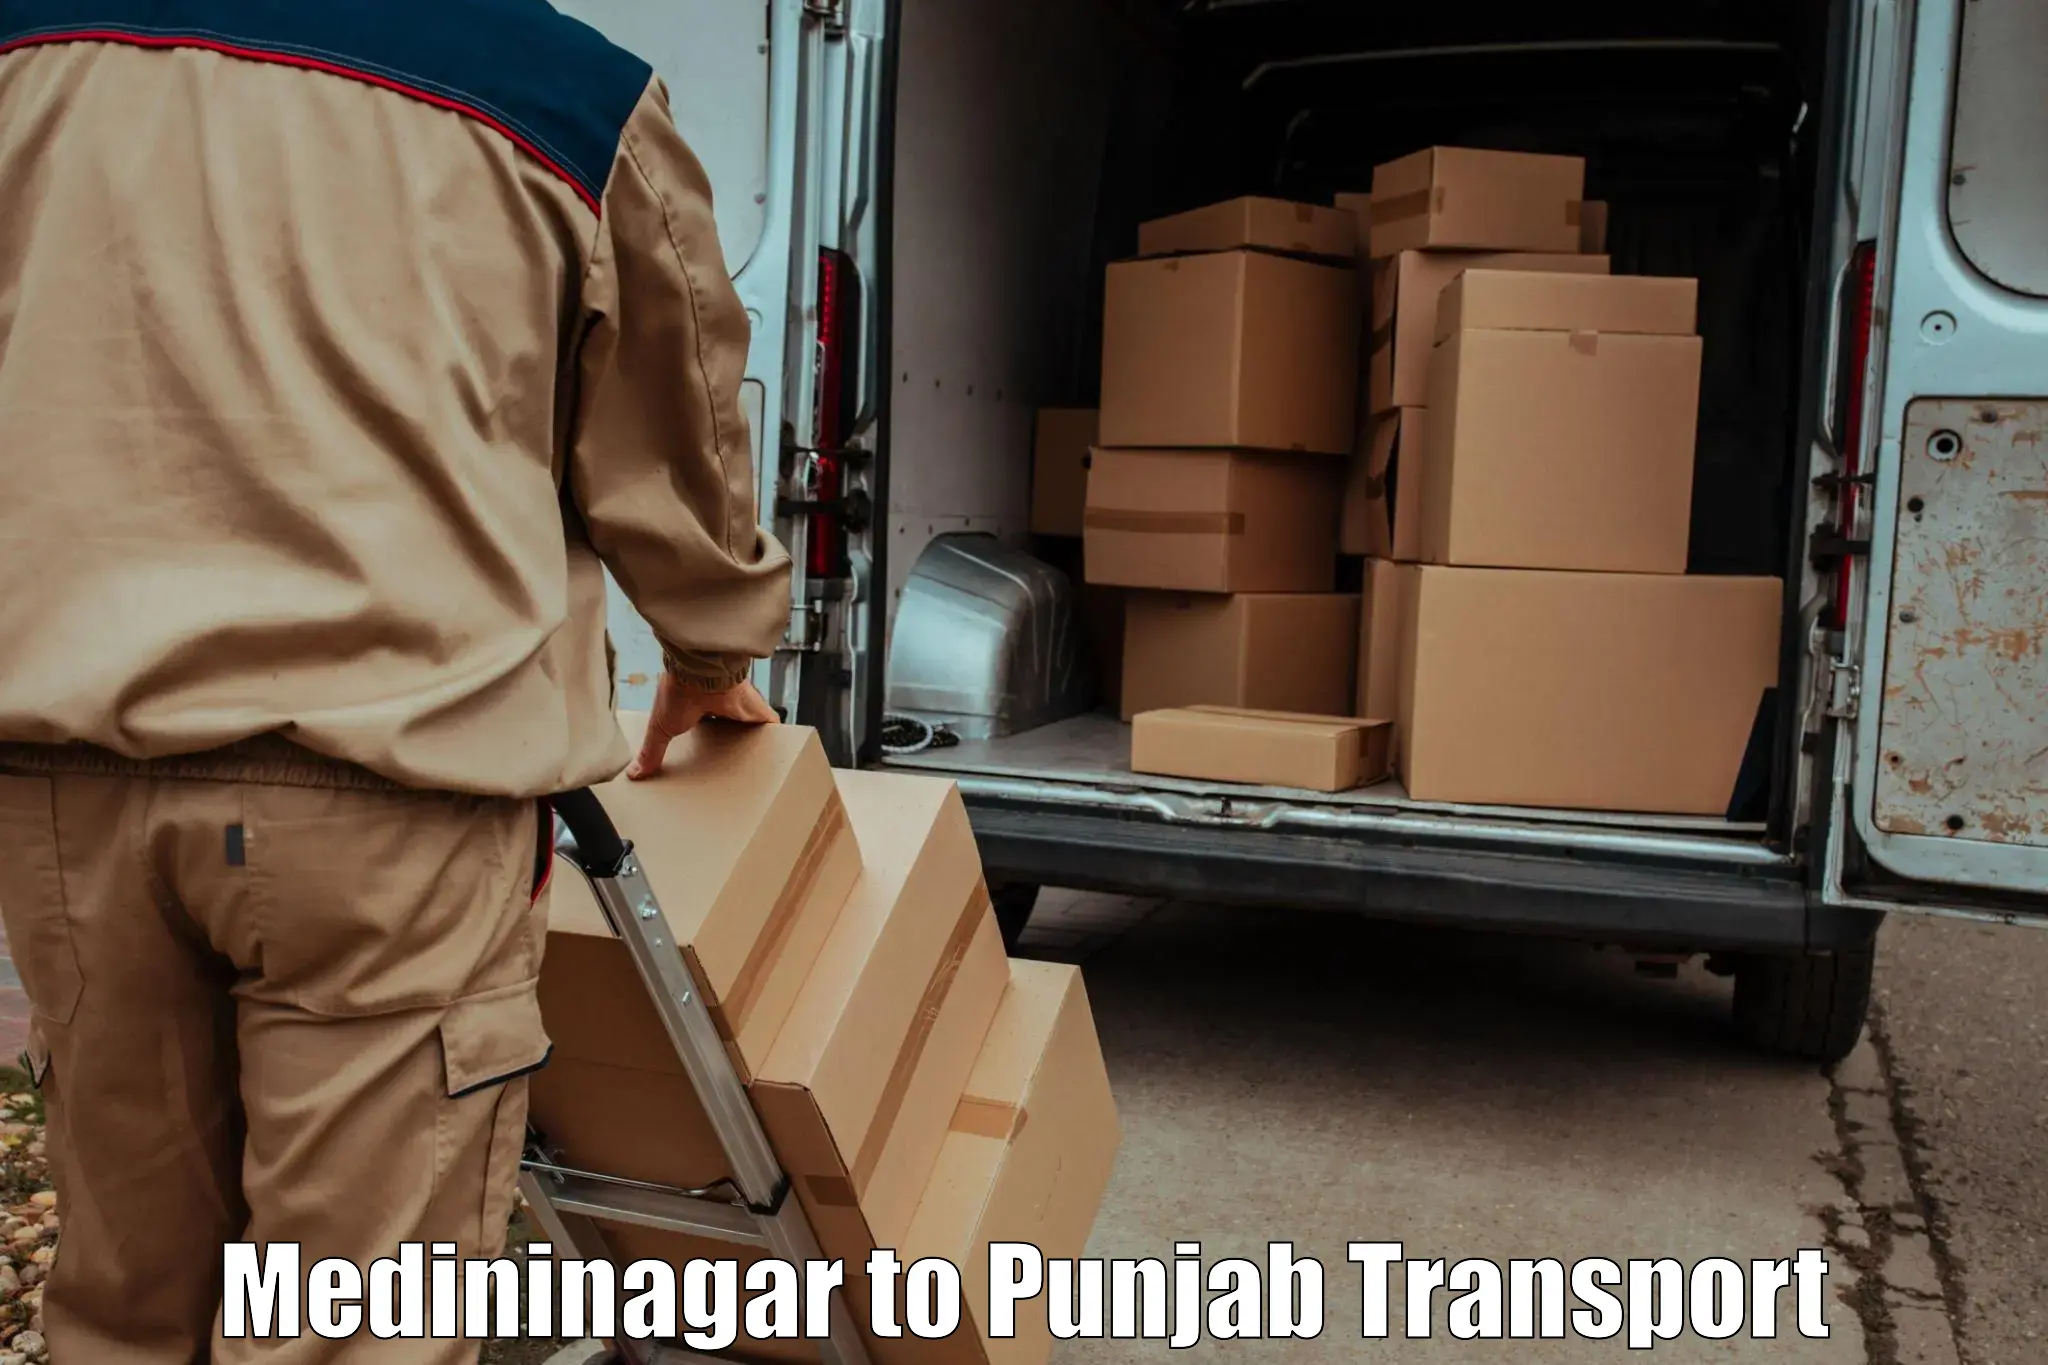 Luggage transport services Medininagar to Dinanagar